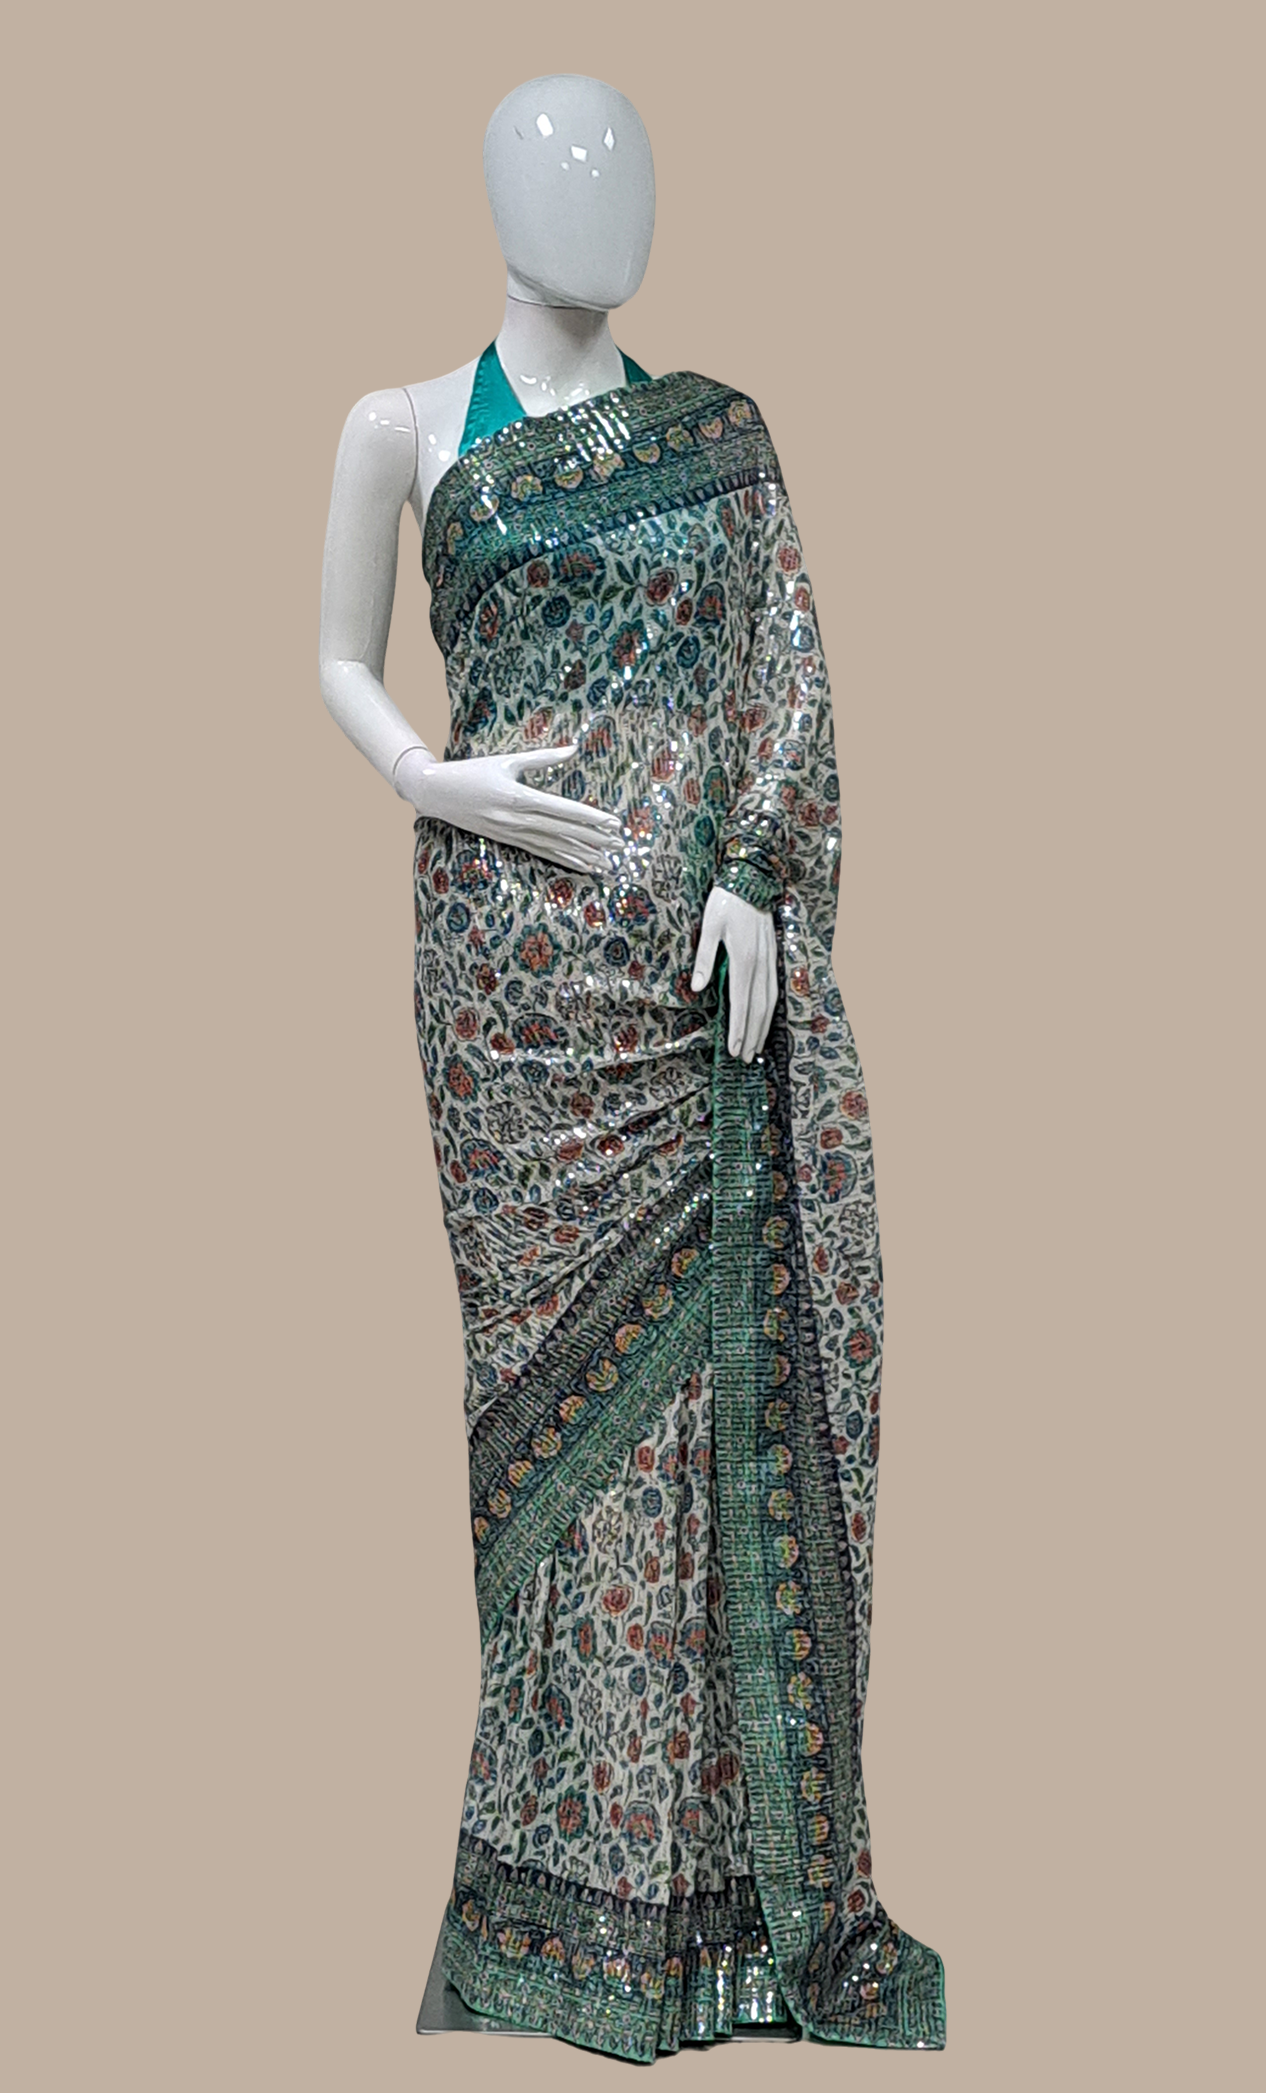 Aqua Green Sequin Embroidered Sari